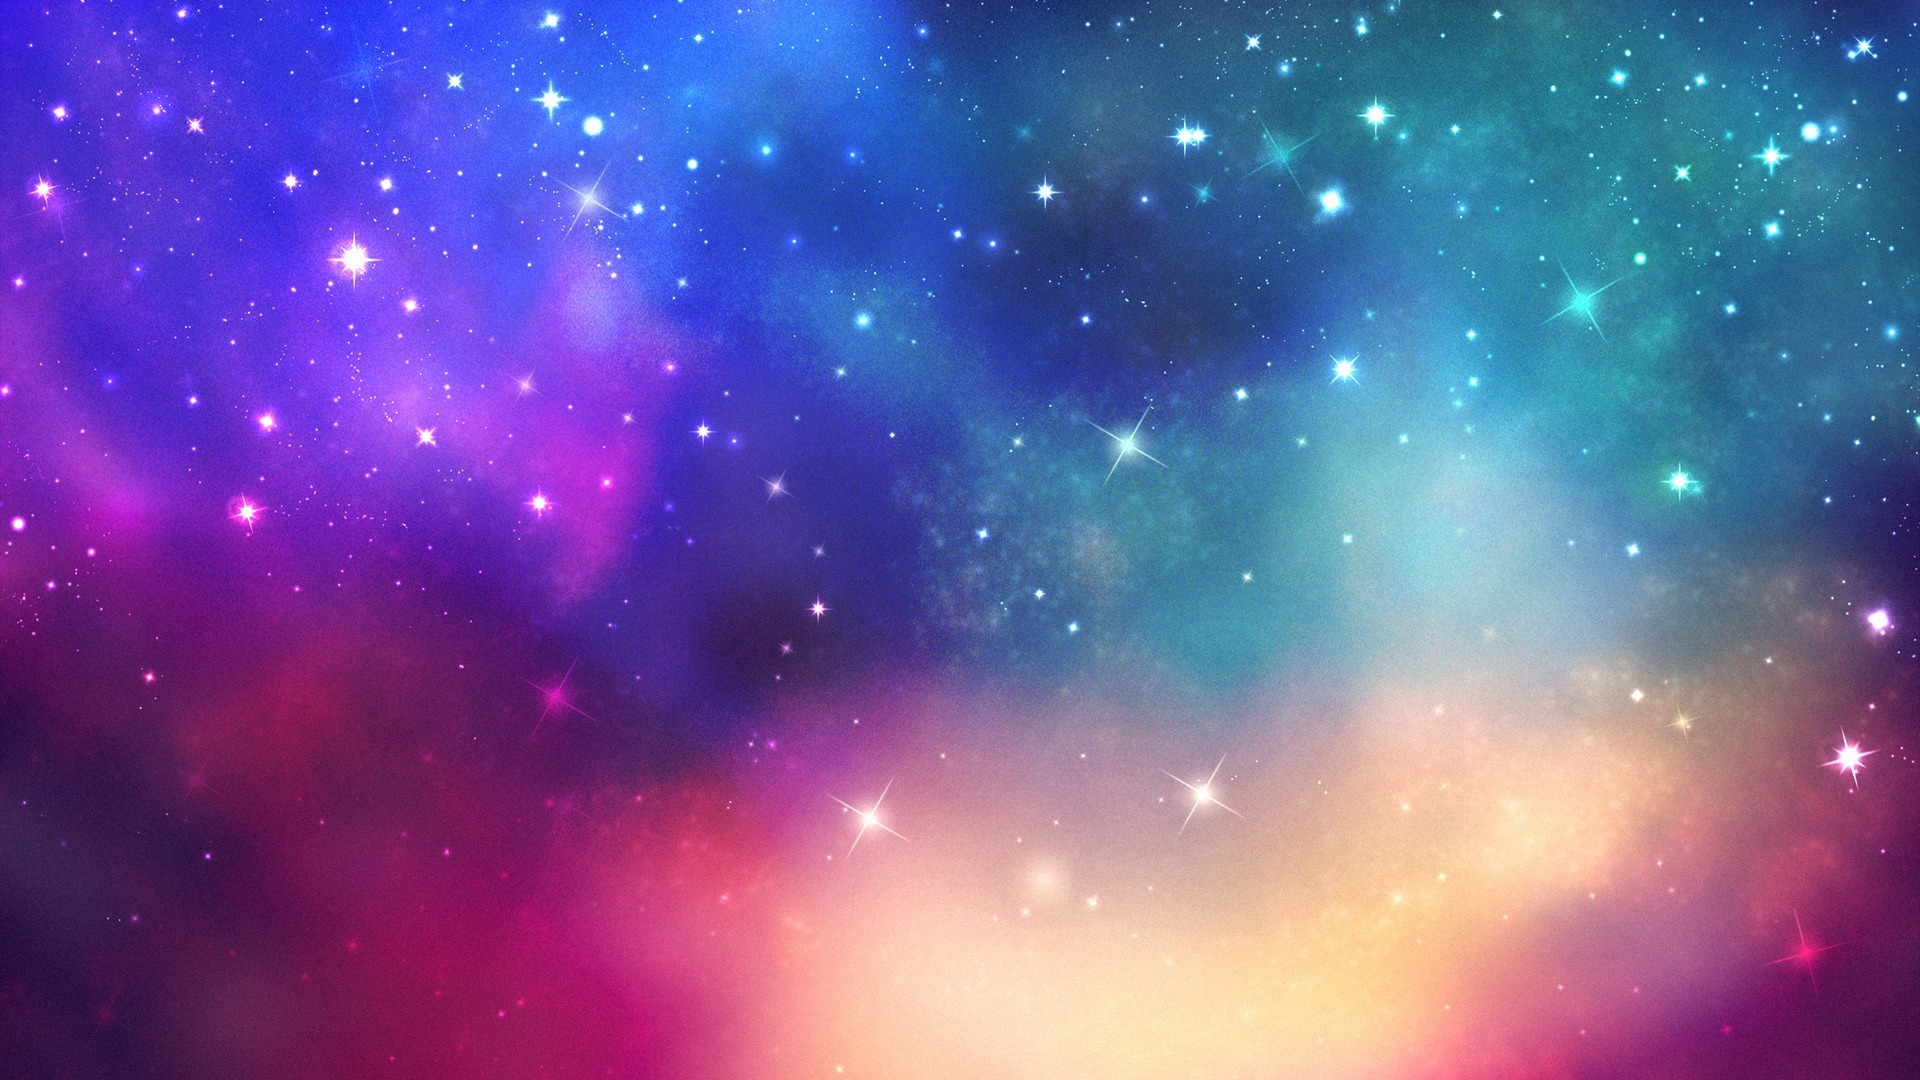 48+] Colorful Galaxy Wallpaper - WallpaperSafari